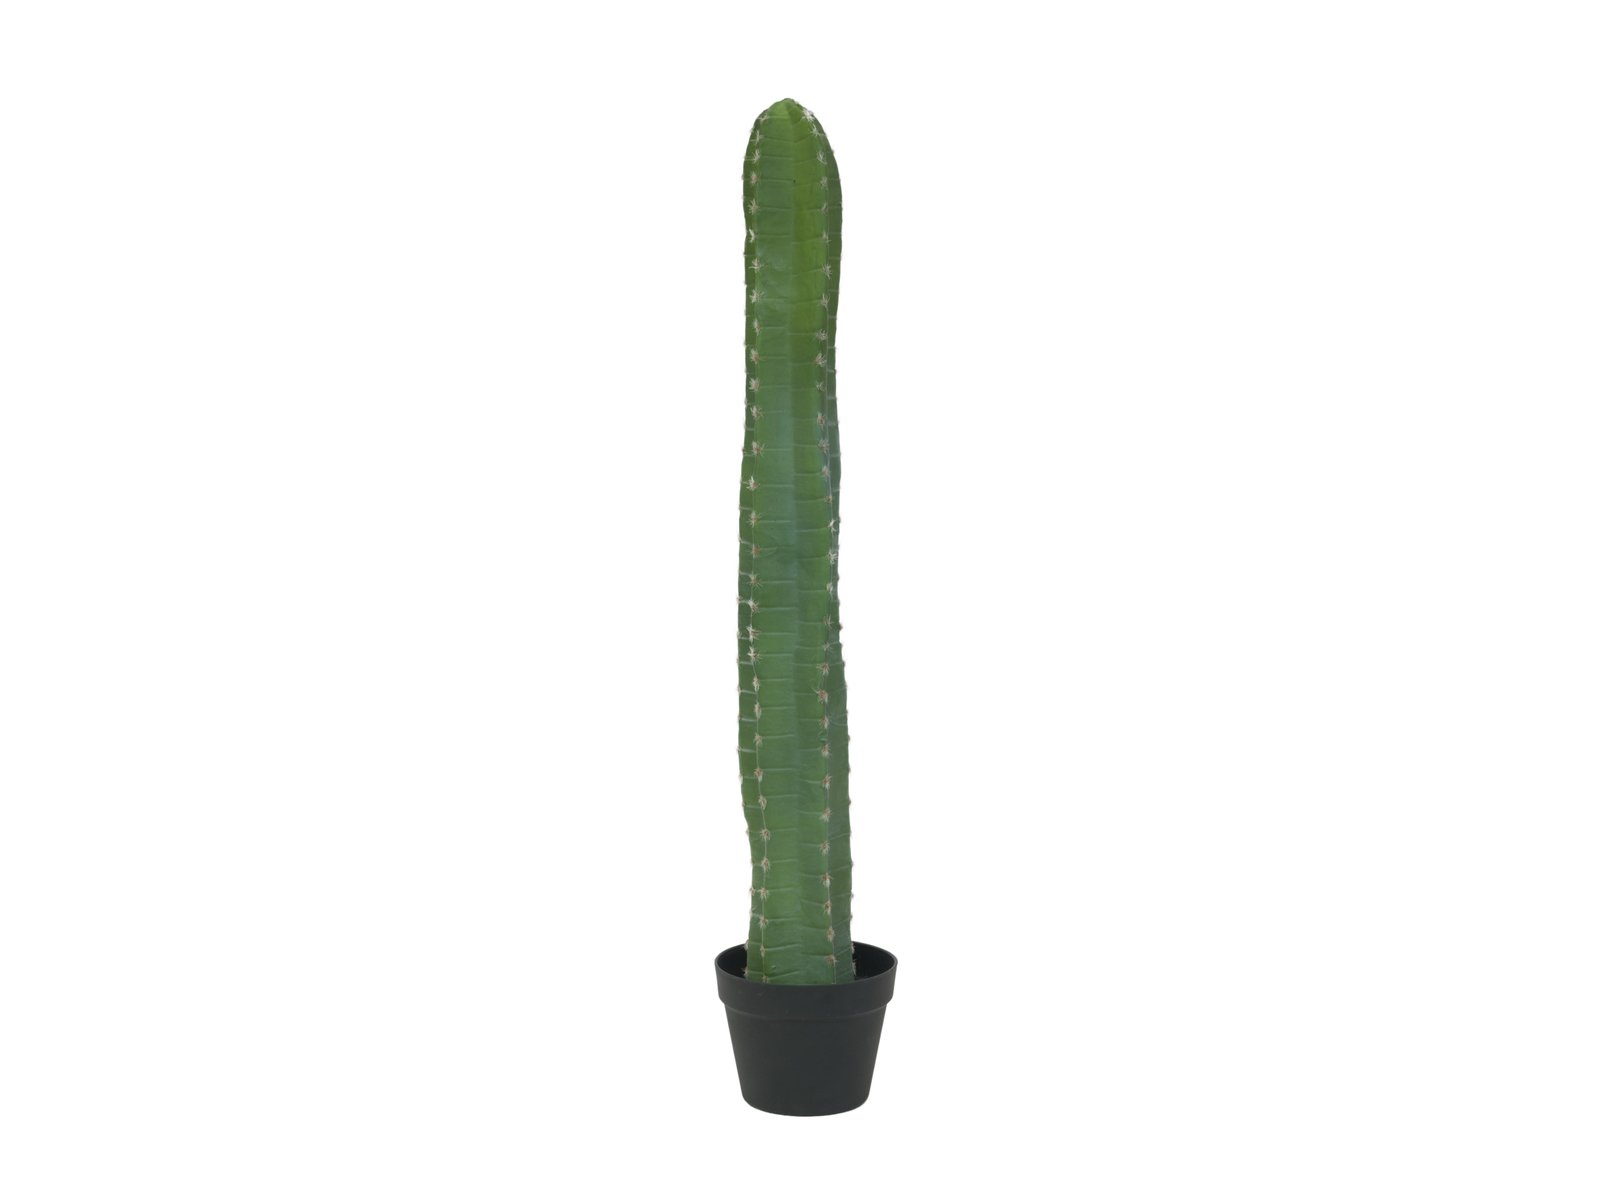 EUROPALMS Mexikanischer Kaktus, Kunstpflanze, grün, 97cm